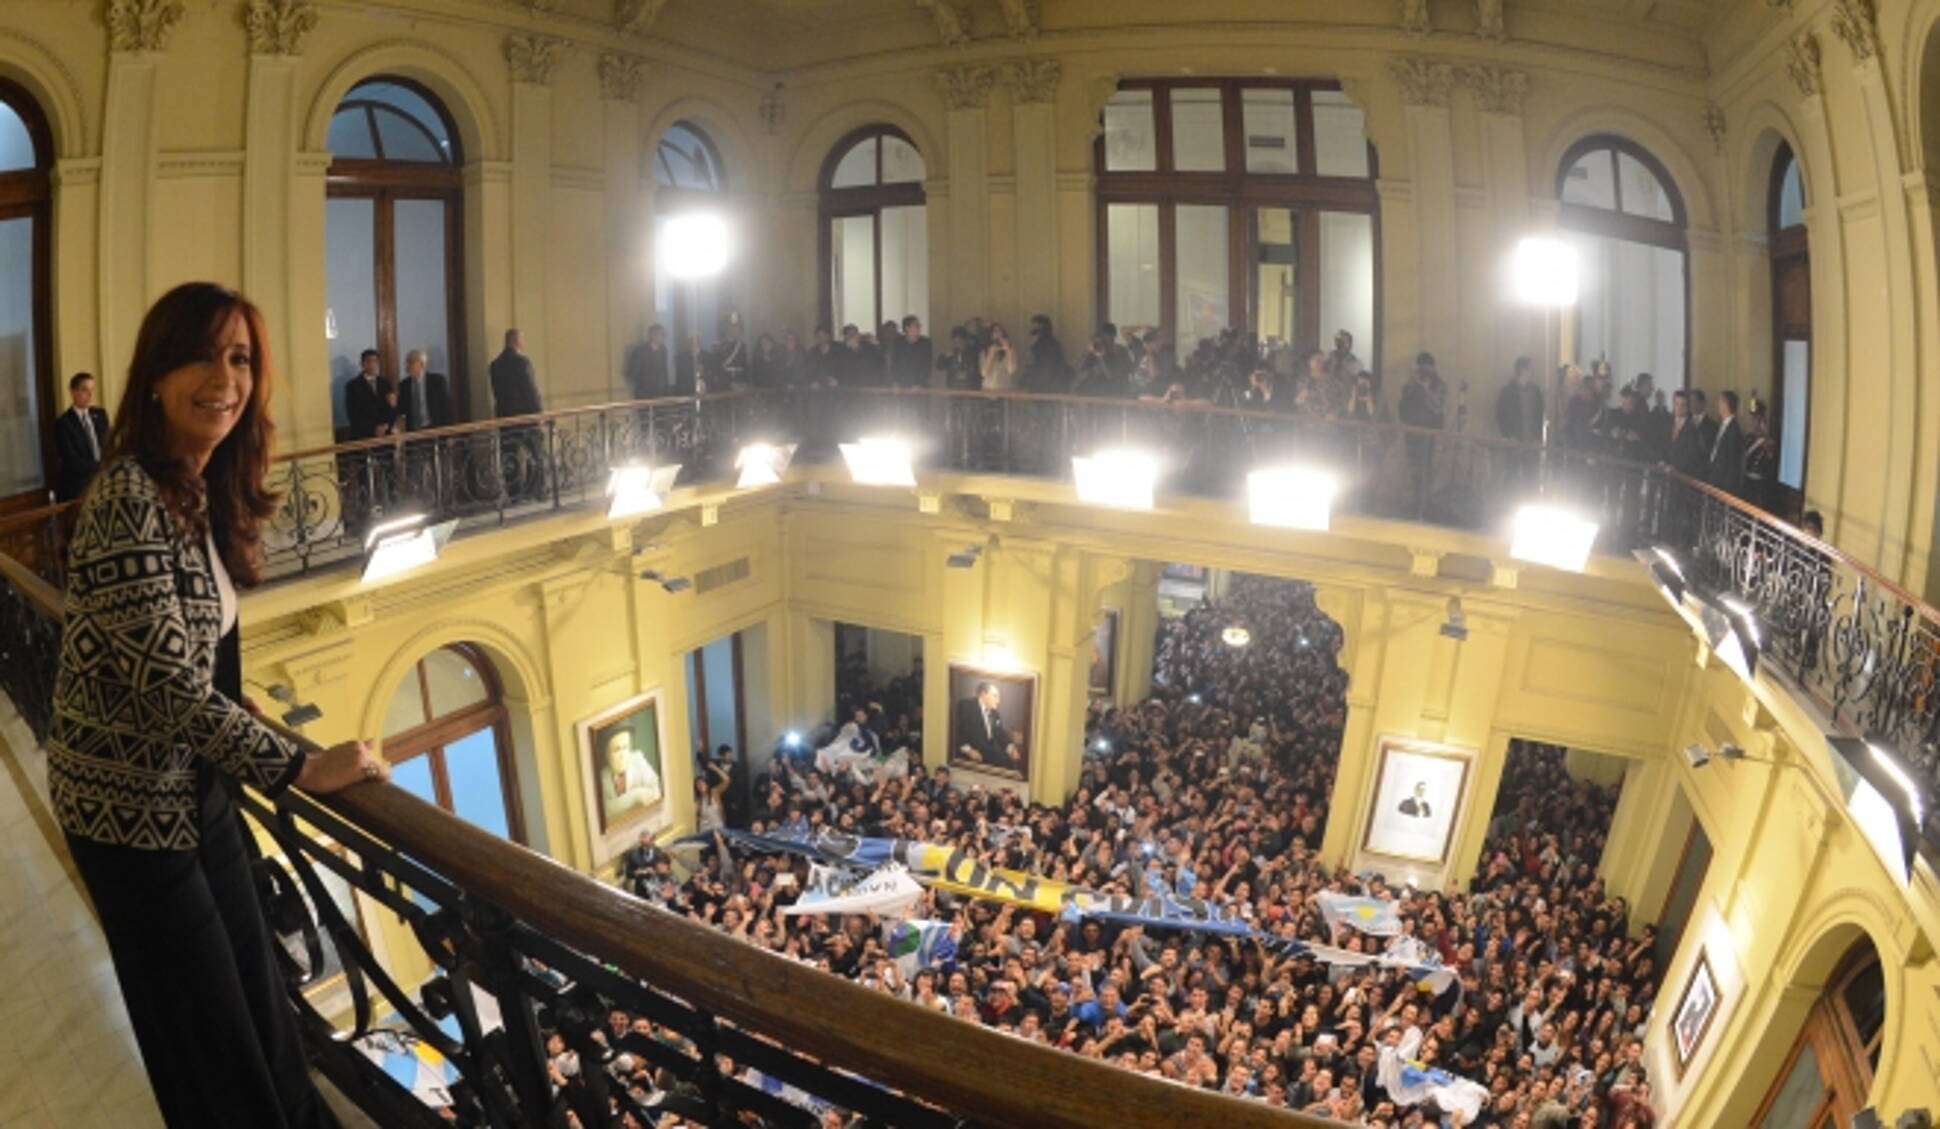 Siempre estaré acompañando al pueblo, aseguró Cristina Fernández